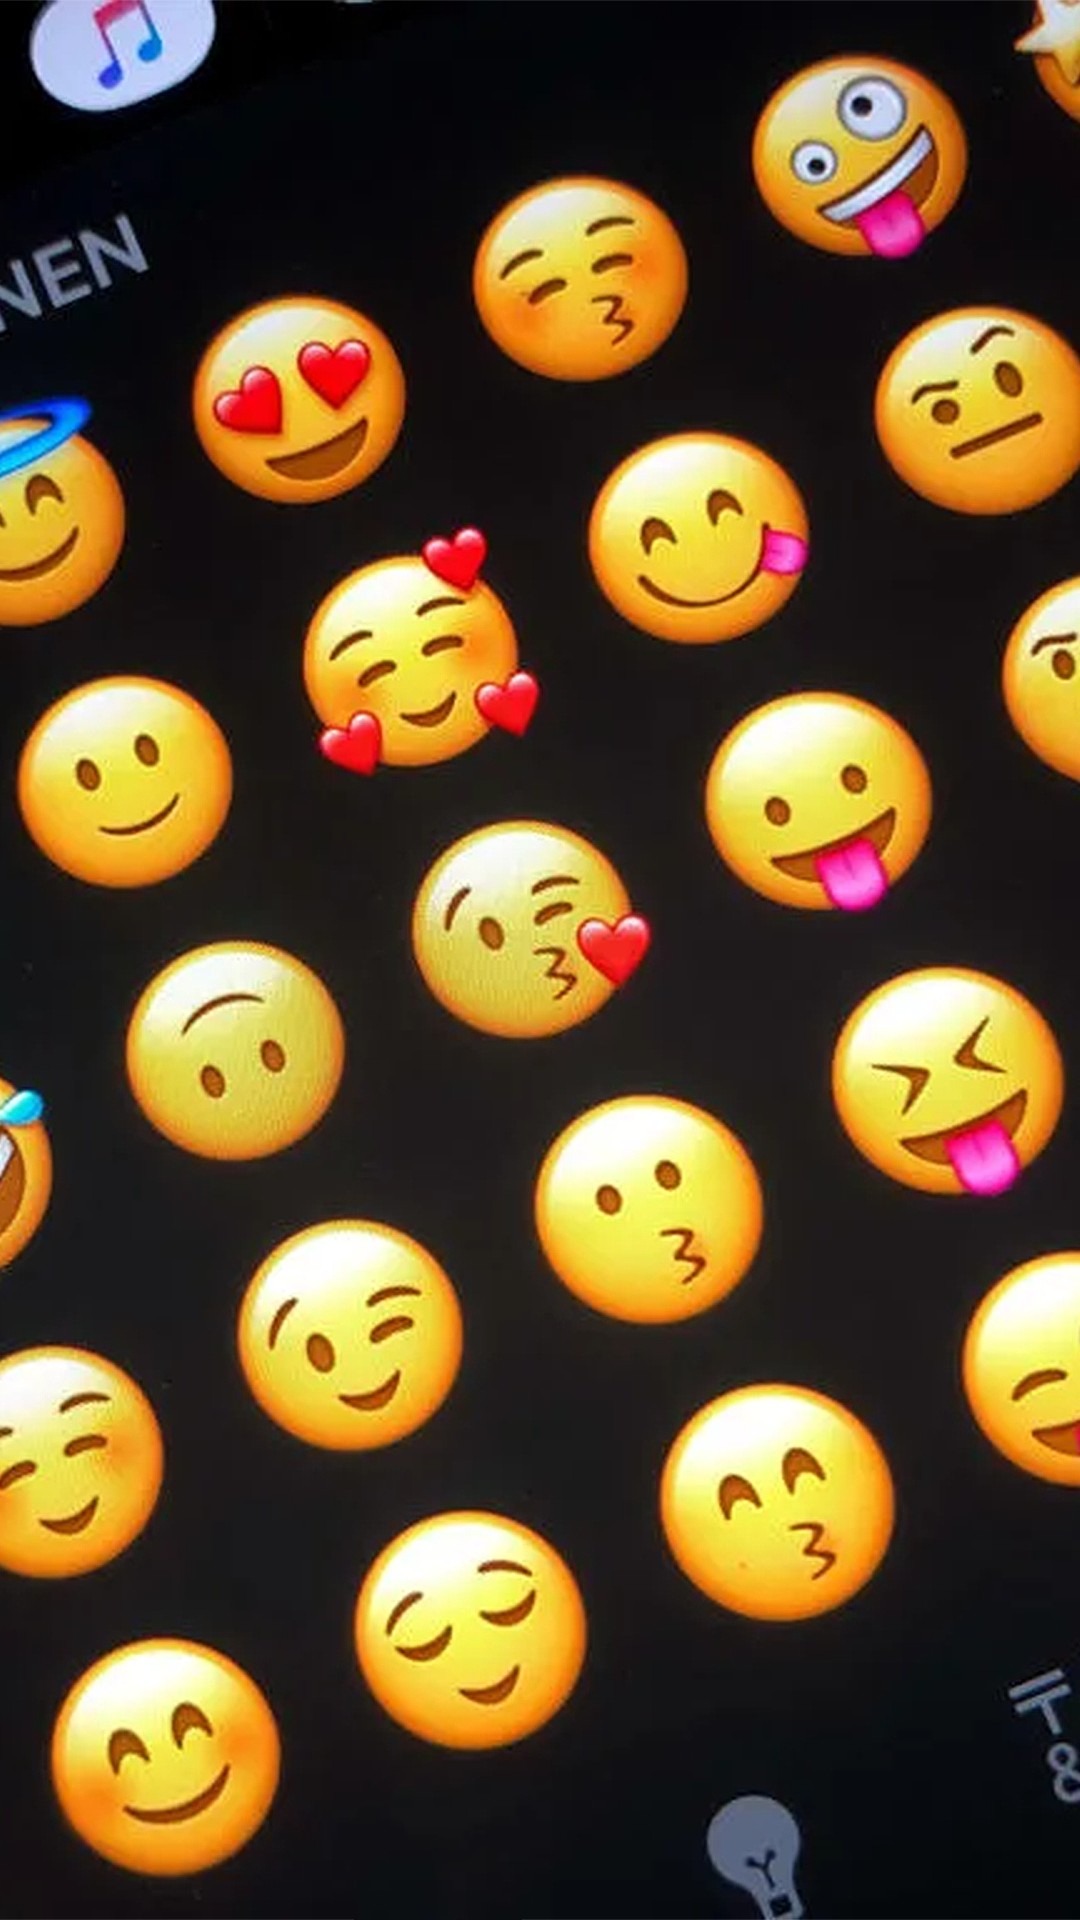 Porque esse emoji 🗿🍷 tem irritado tanta gente? #senhores